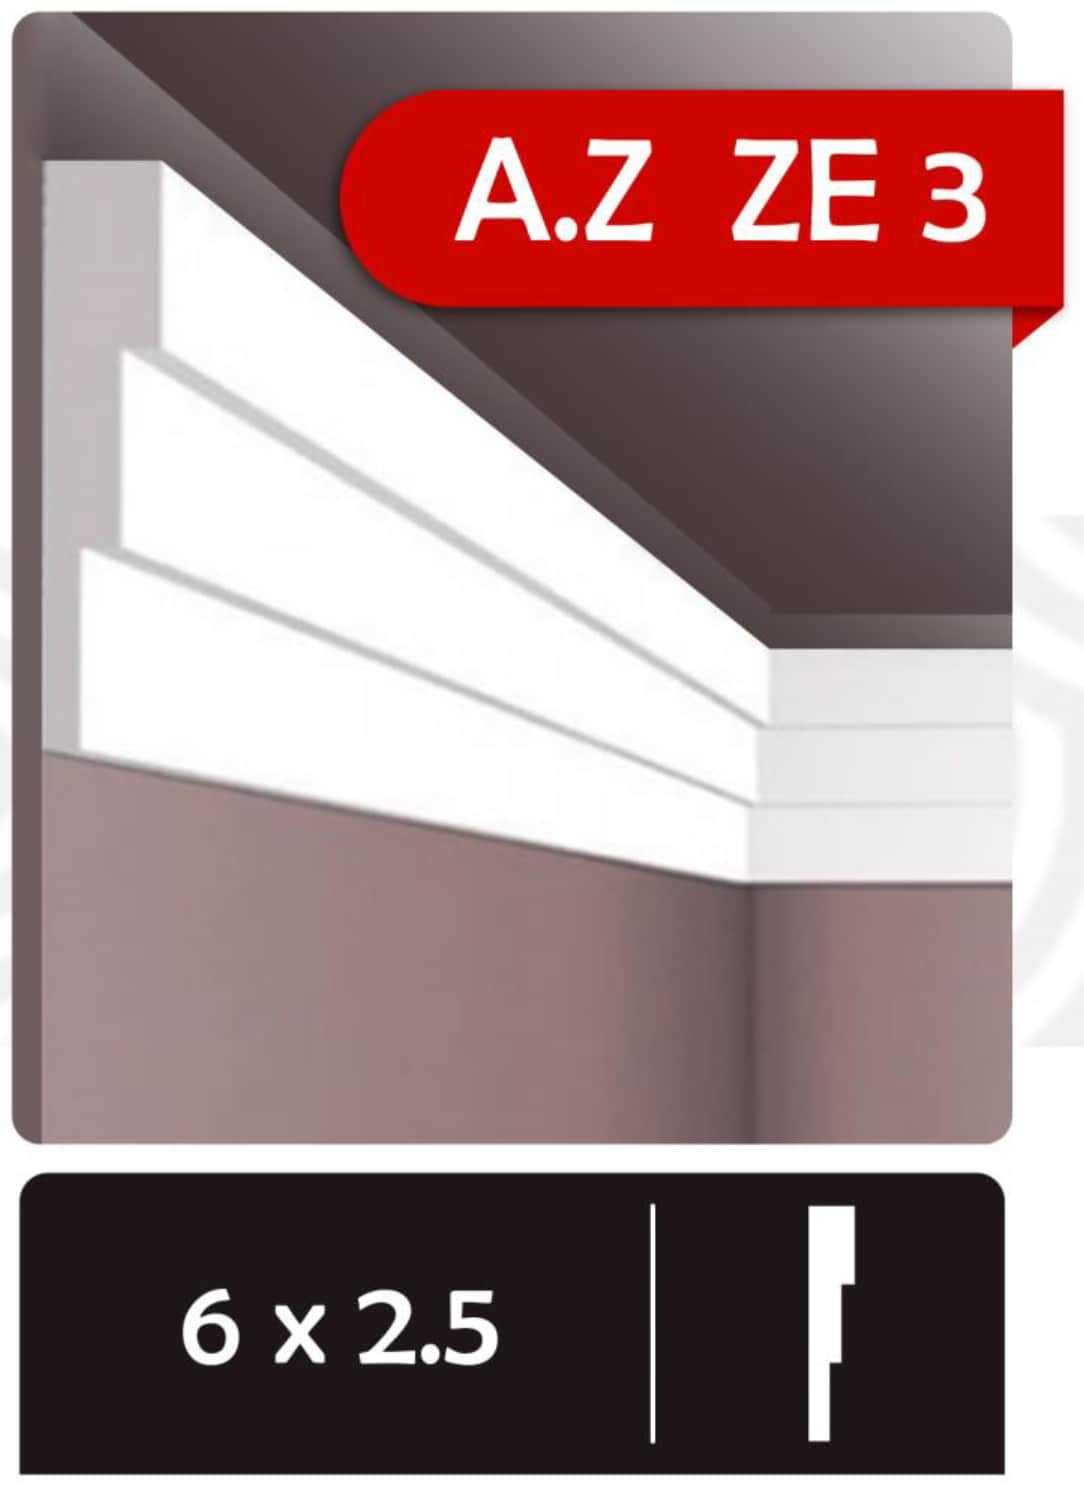 A.Z ZE 3 - ابزار گلویی (قاب بندی psp)